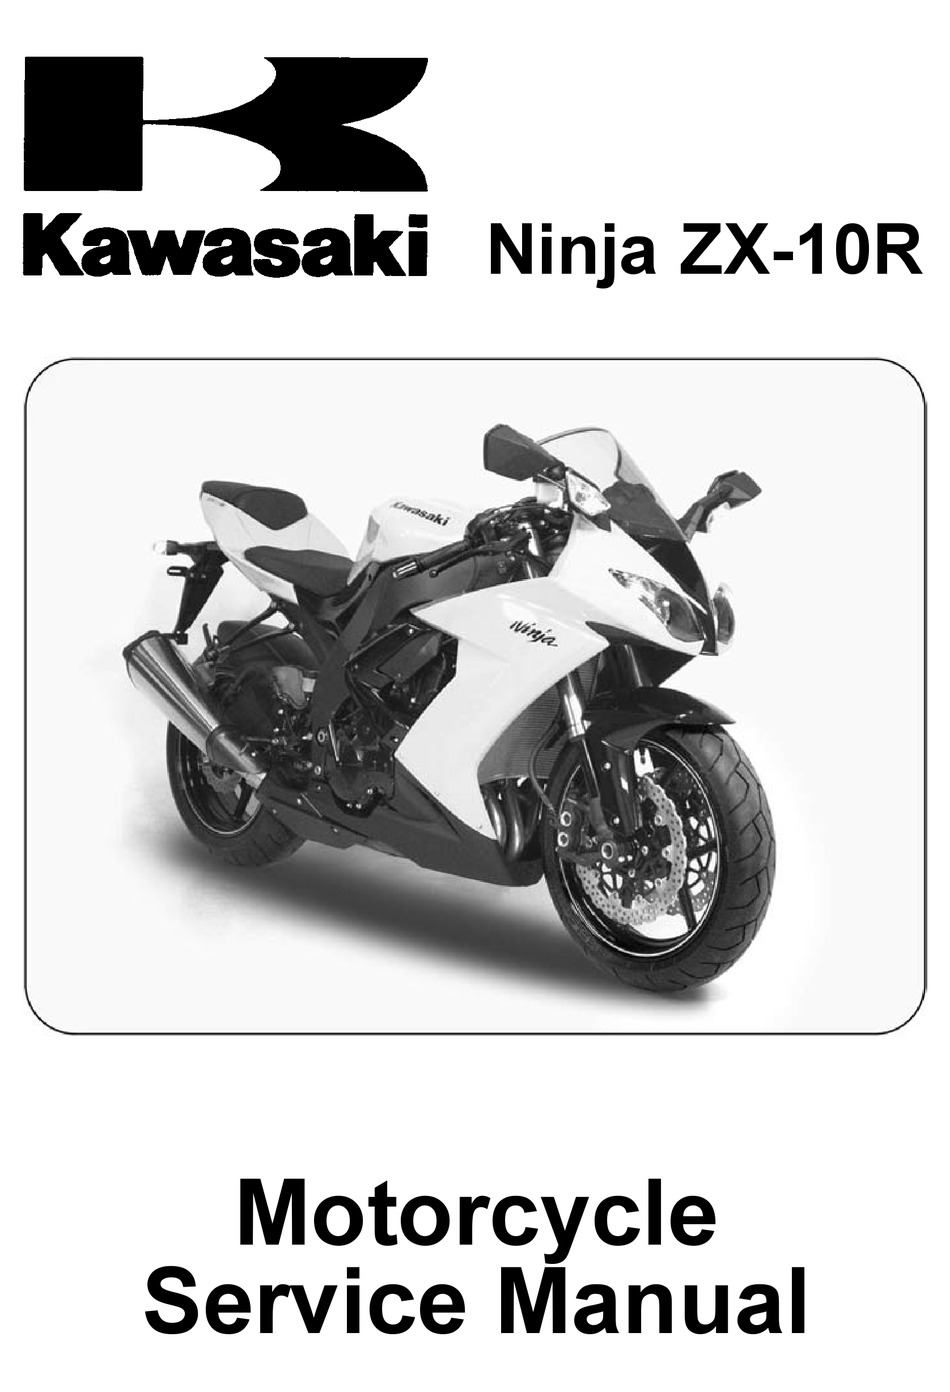 Front Turn Signal Indicator Lenses Cover For Kawasaki Ninja ZX-10 ZX1000 89 1990